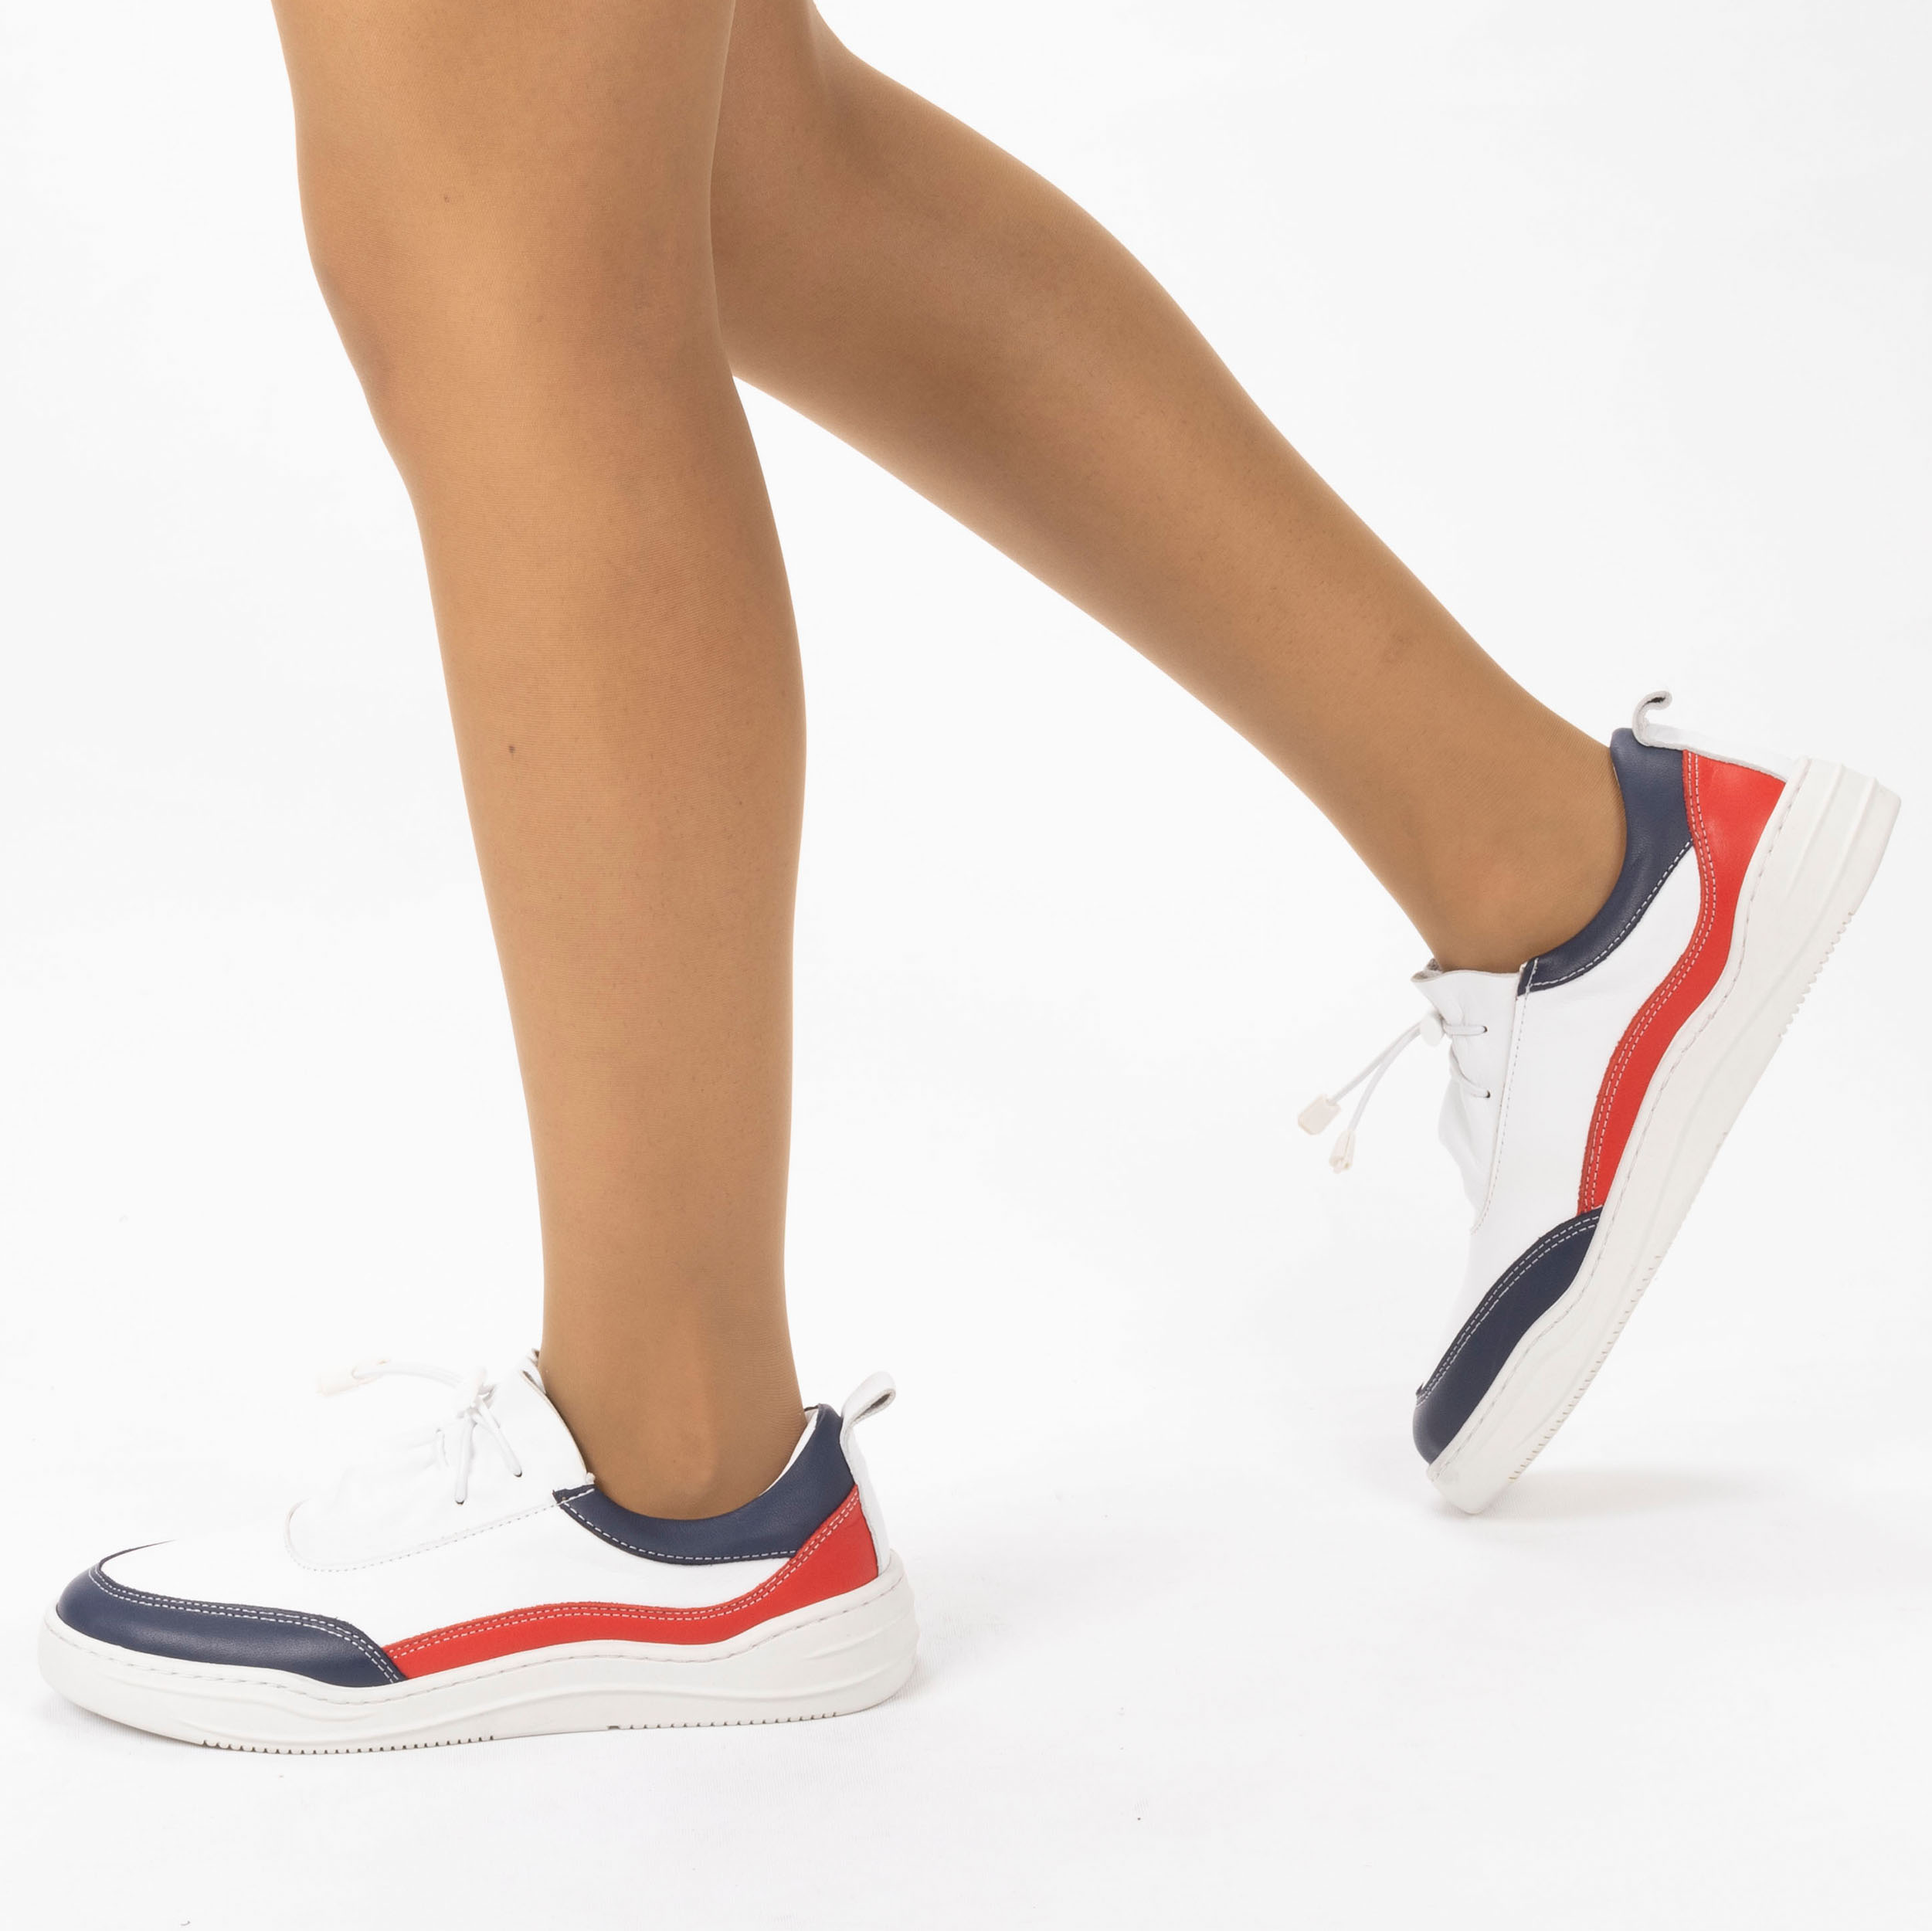 Kadın Hakiki Deri  Günlük Spor Ayakkabı / Sneakers, Renk: Lacivert - Kırmızı, Beden: 41